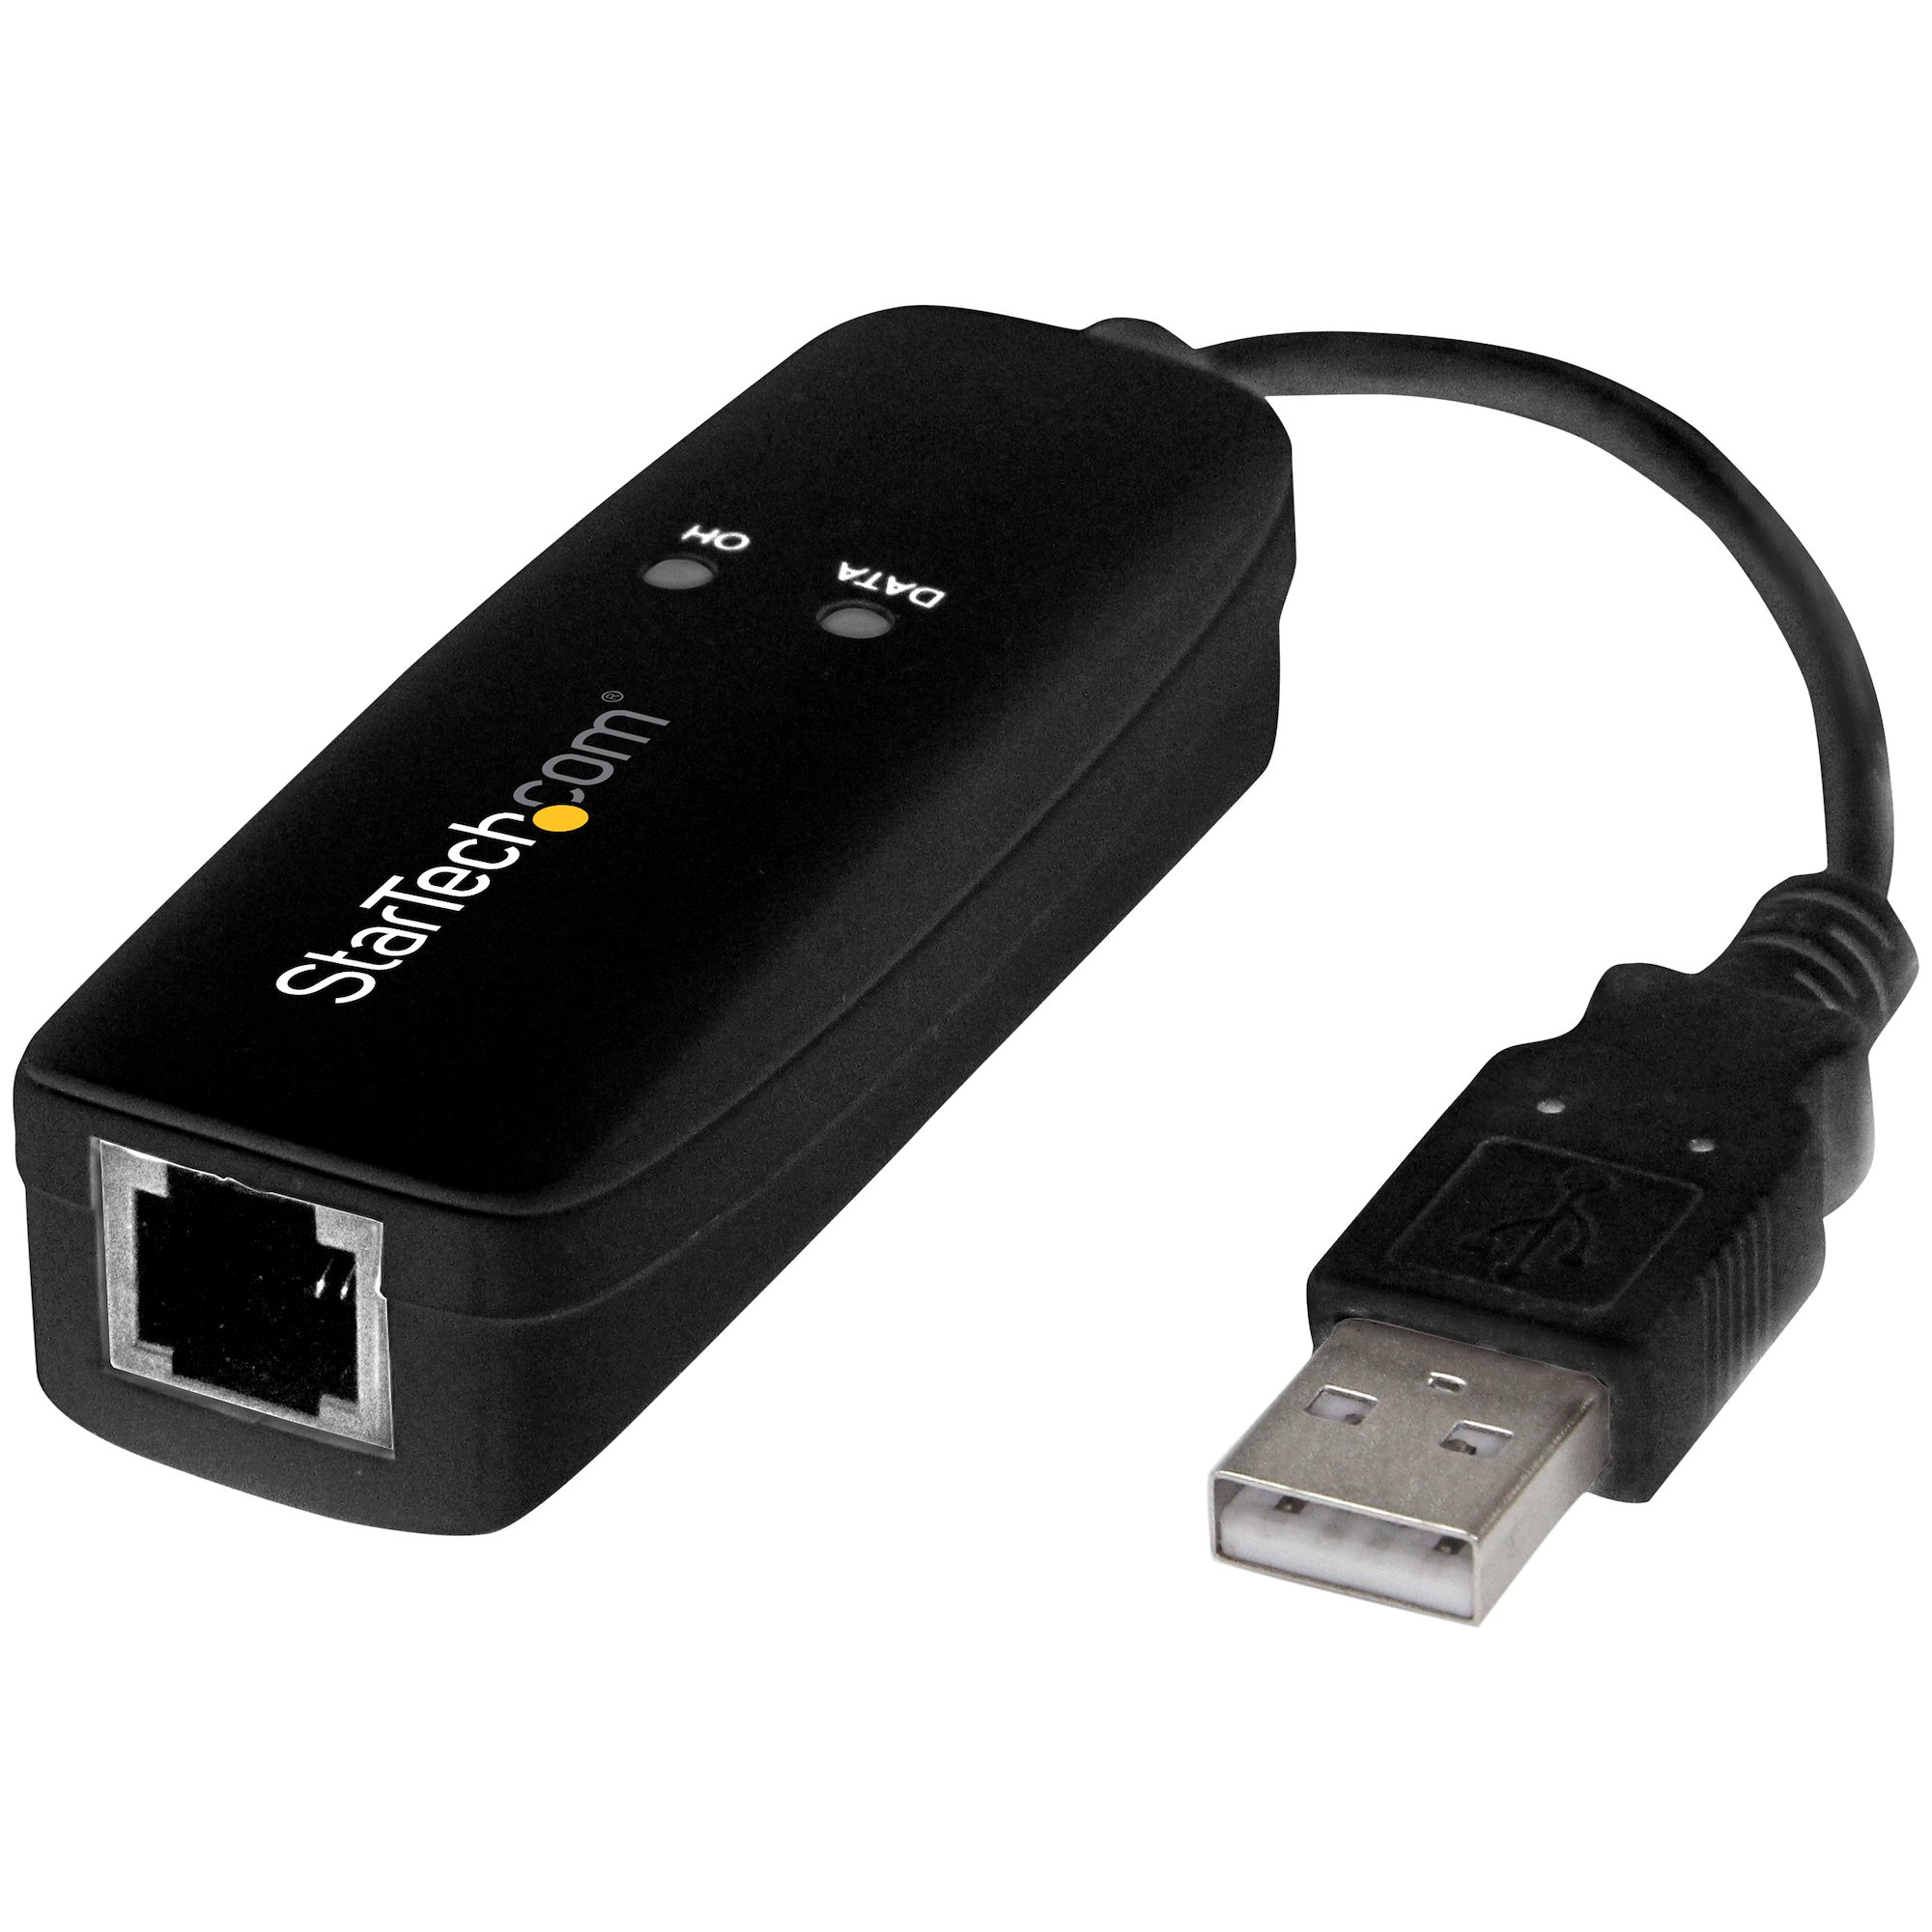 StarTech.com USB 2.0 faxmodem - 56K Extern hårdvaruuppringning V.92 modem/dongel/adapter - Faxmodem för dator/bärbar dator - USB till telefonuttag - USB-datamodem - Nätverksfax/CMR/POS